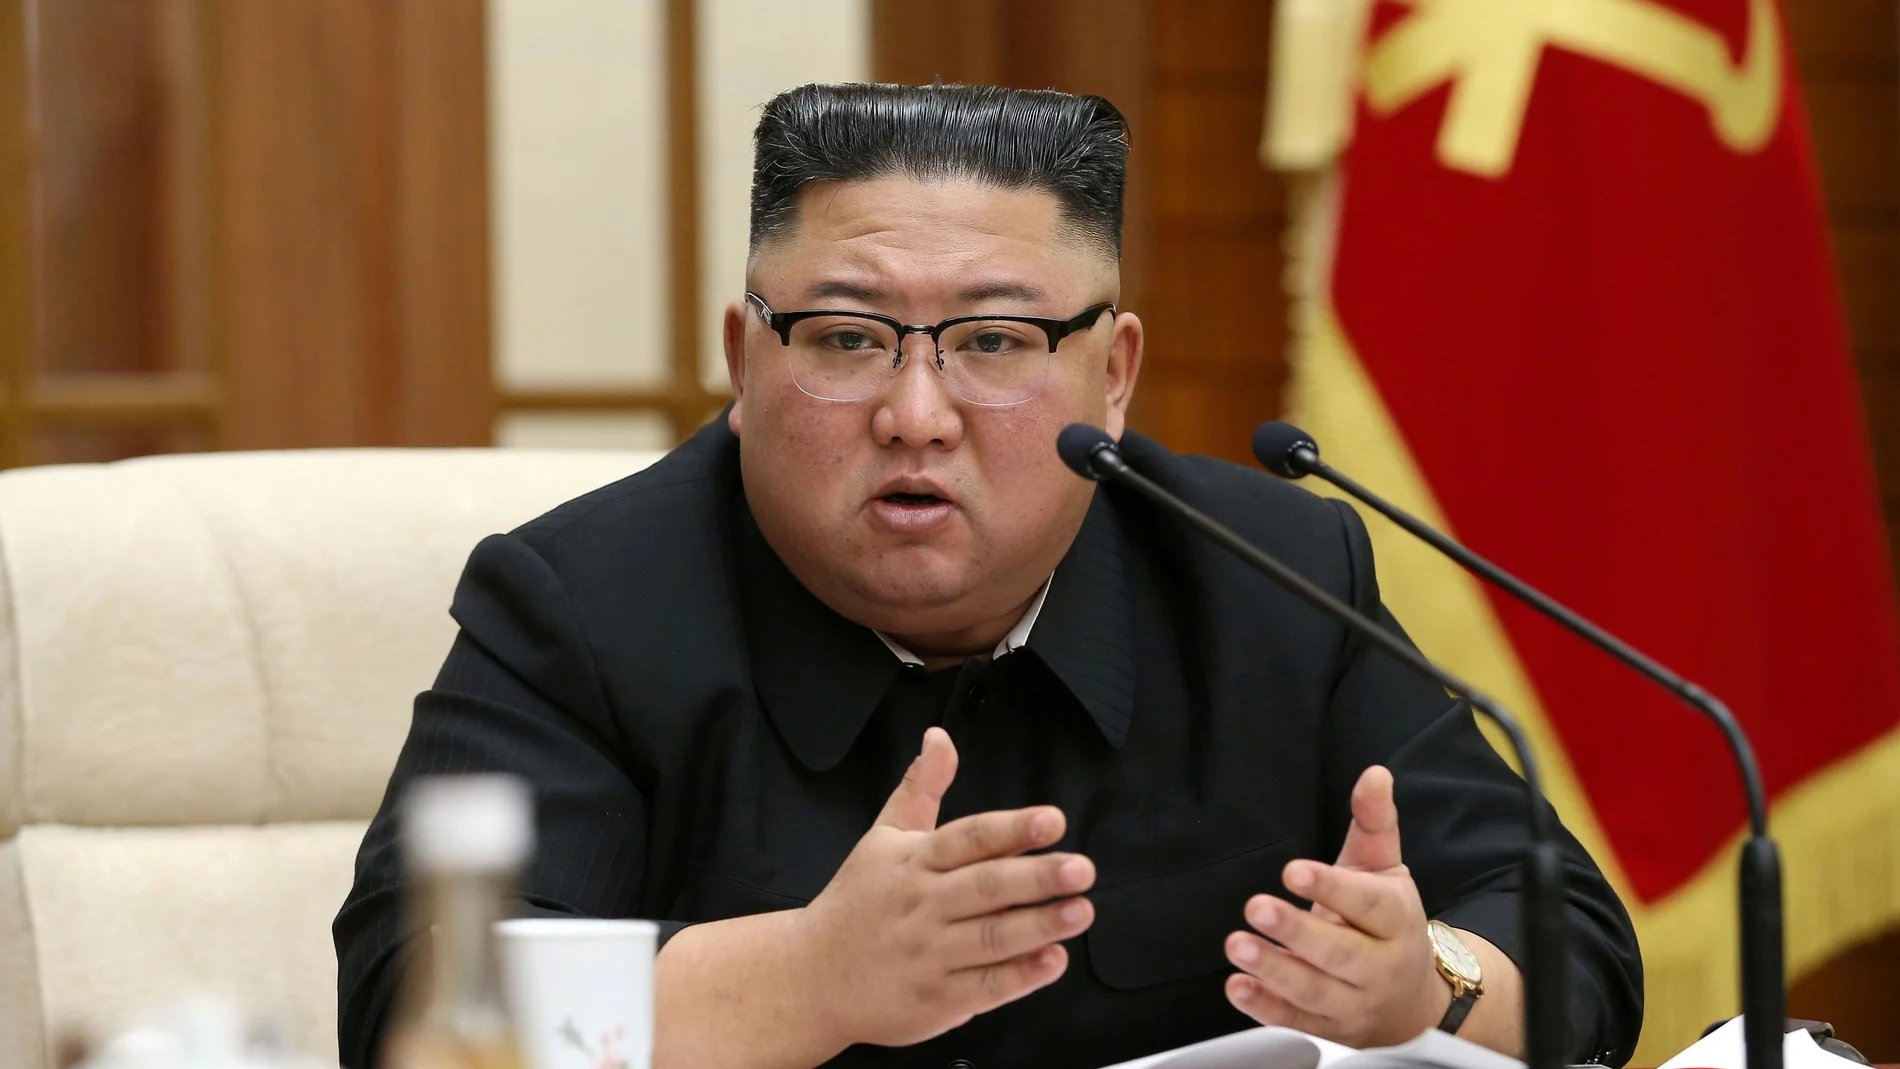 El líder norcoreano, Kim Jong Un, durante una reunión reciente en Pyongyang